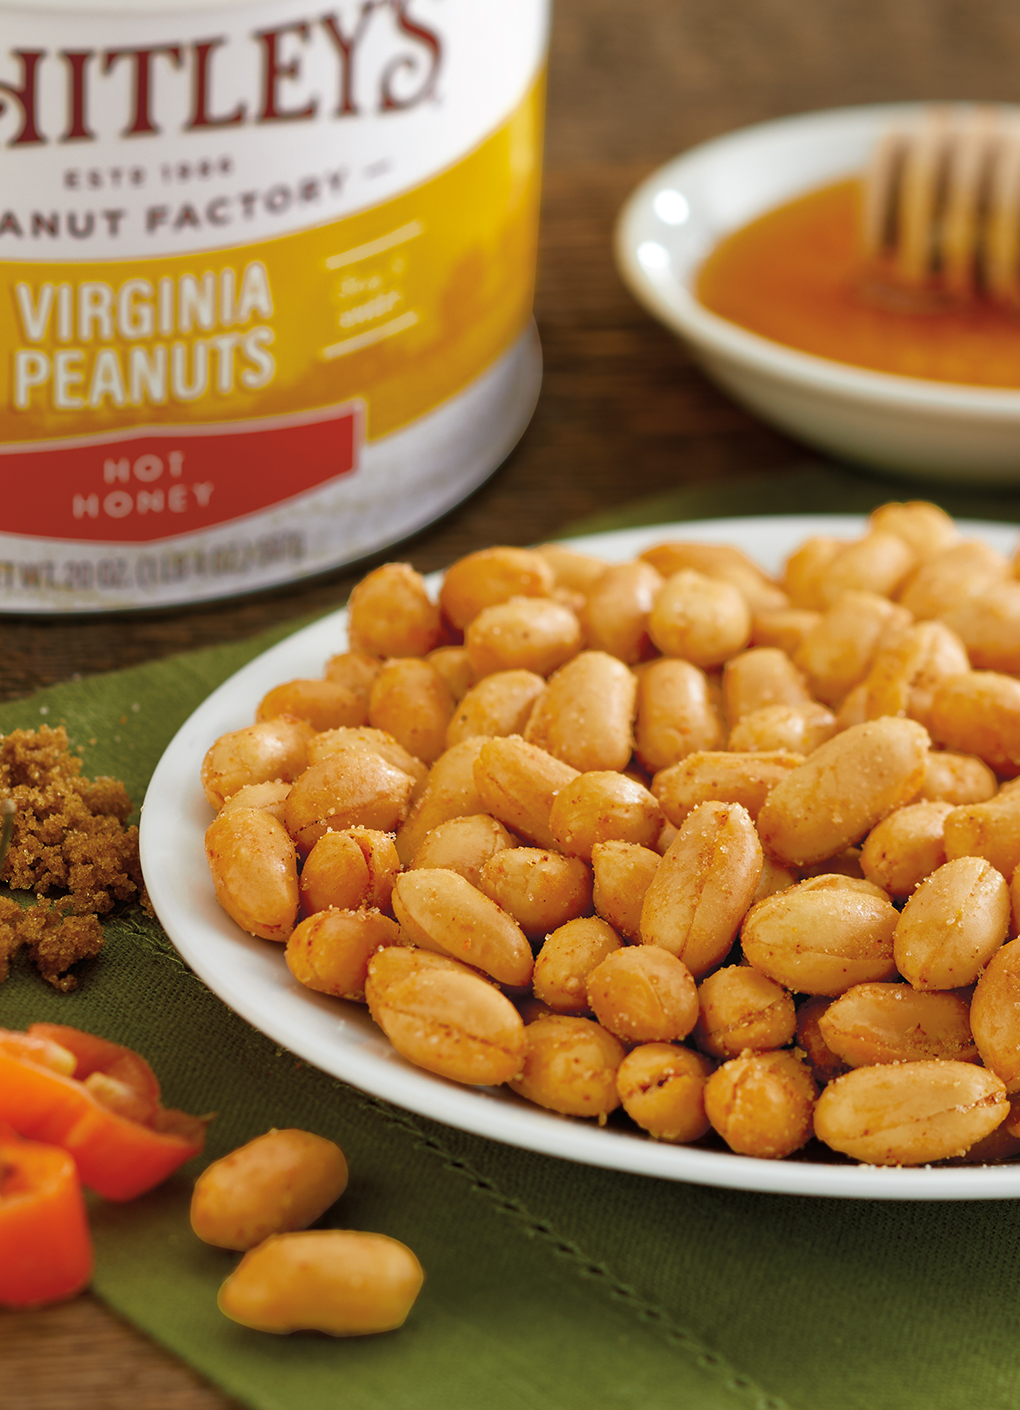 Seasoned Virginia Peanuts